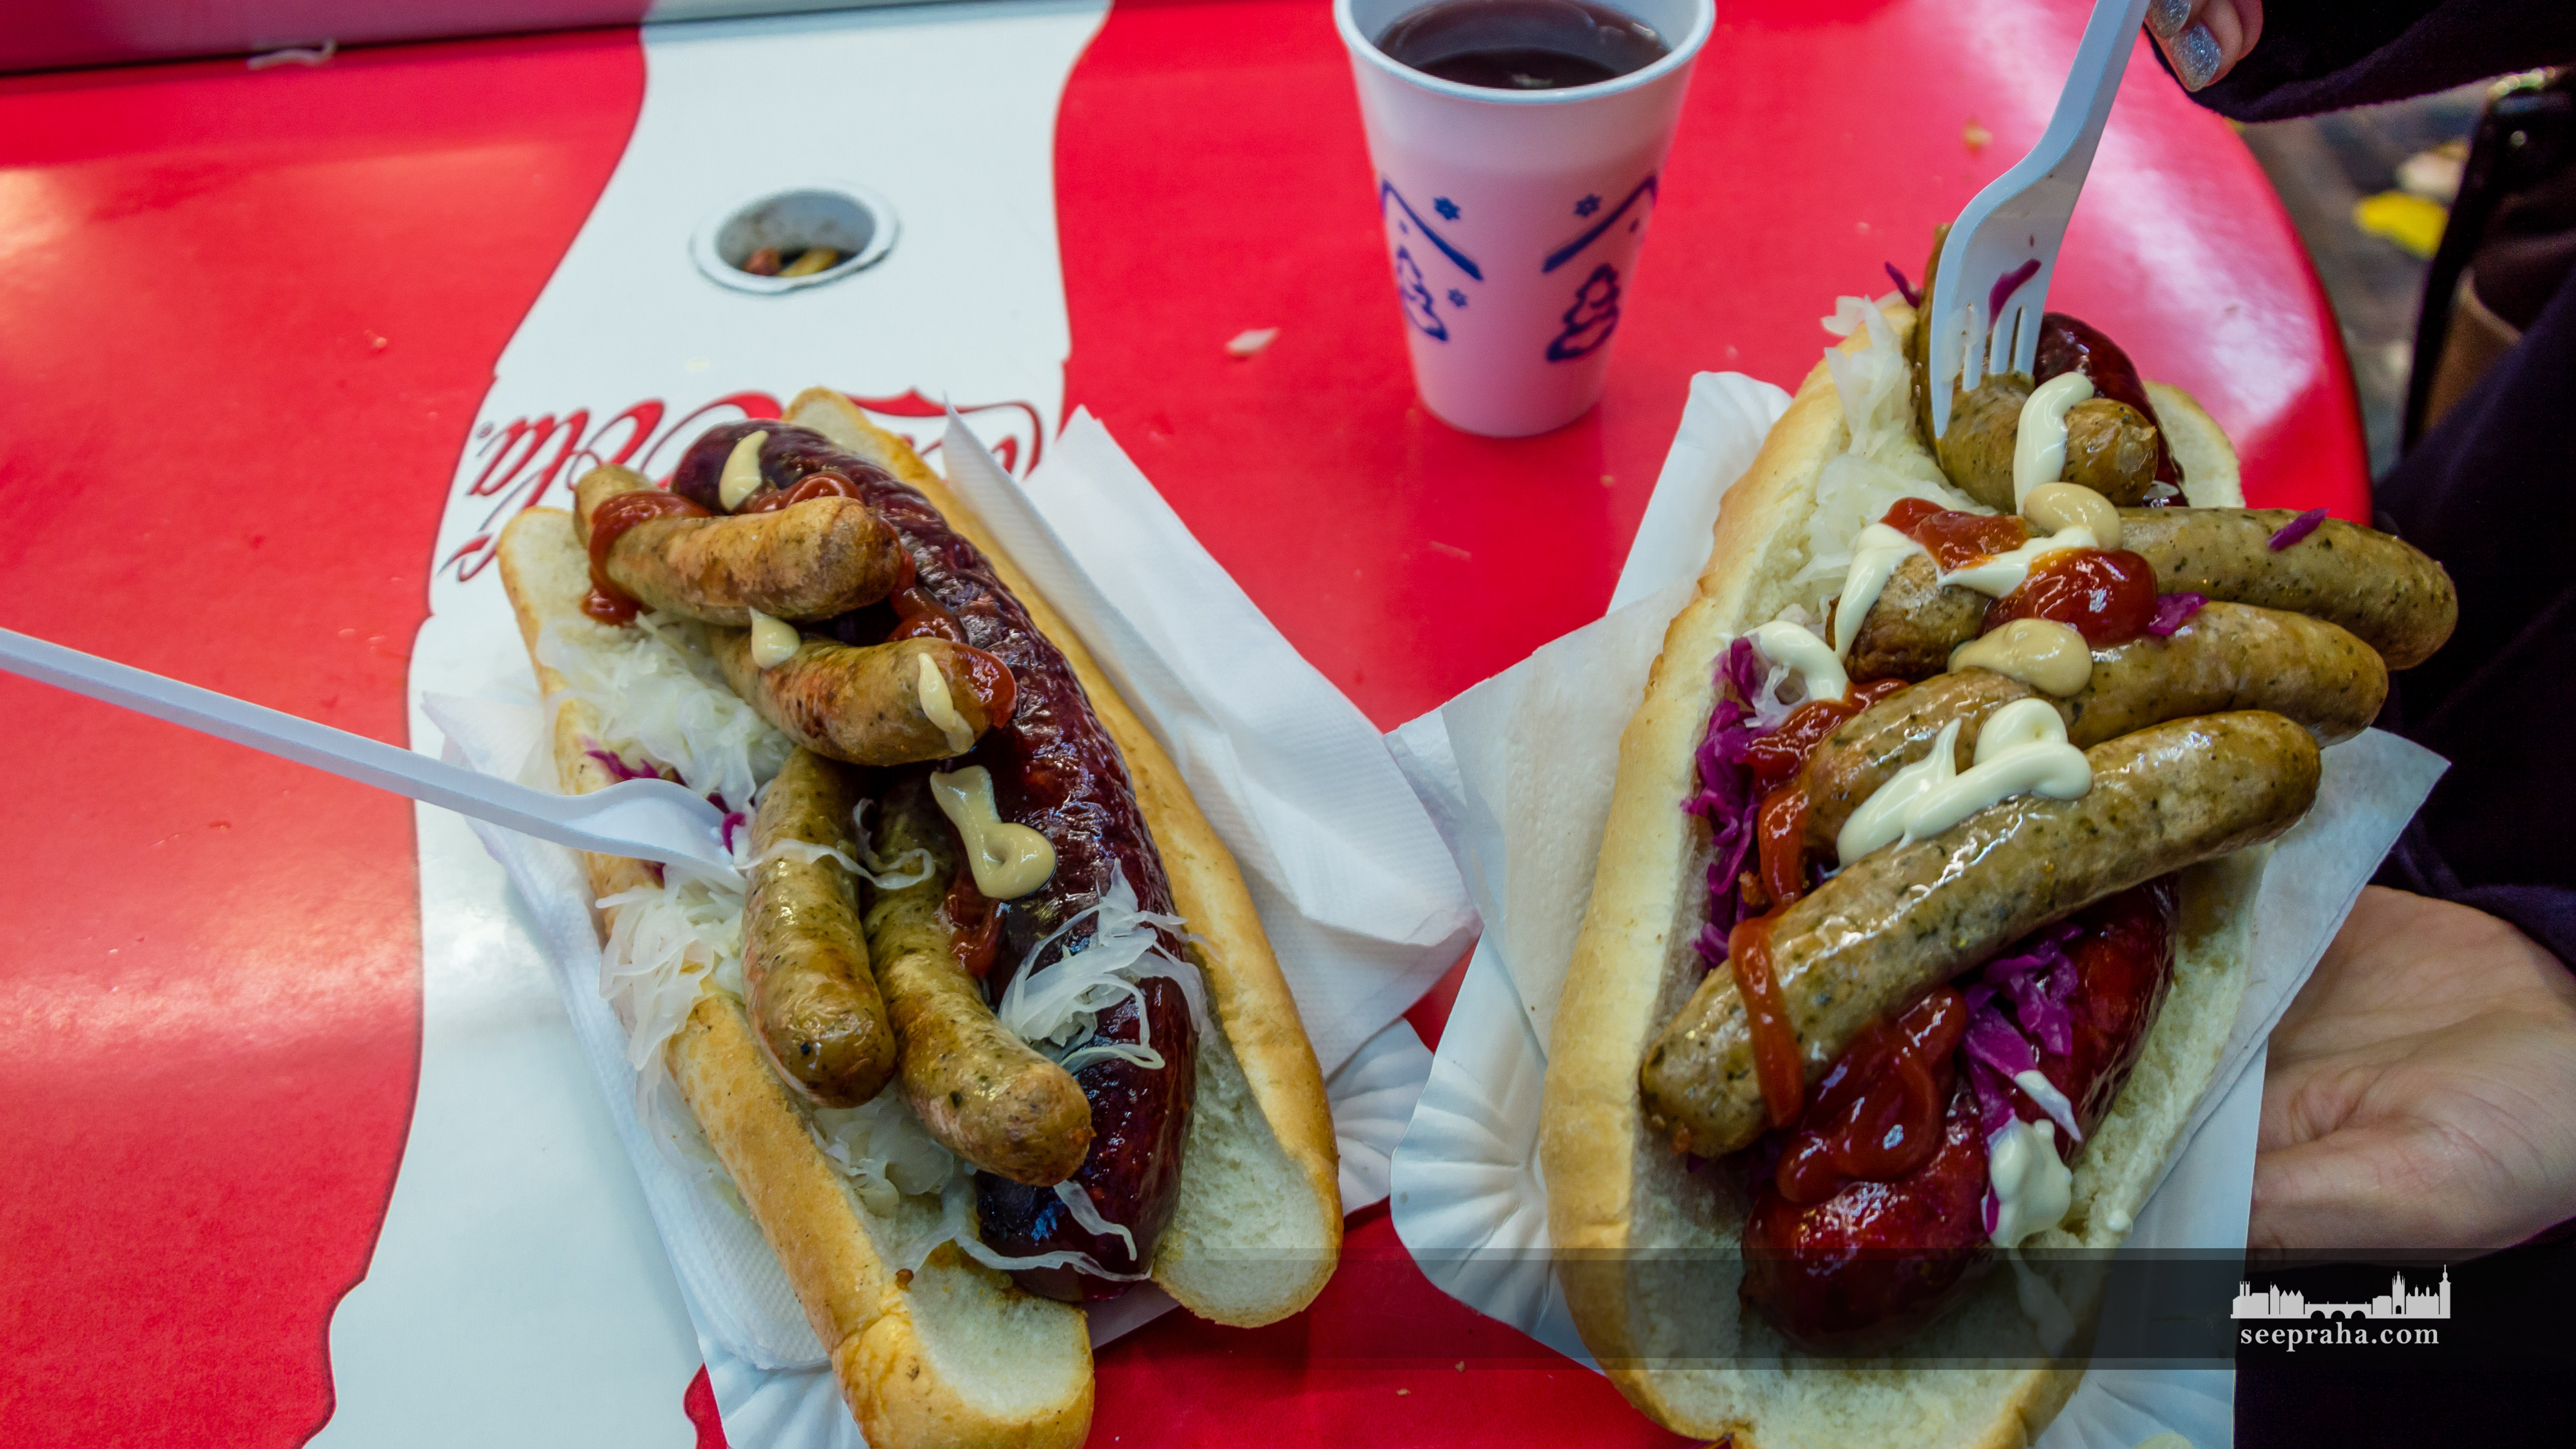 Hot dogi z kiełbasą praską i staropraską, Praga, Czechy